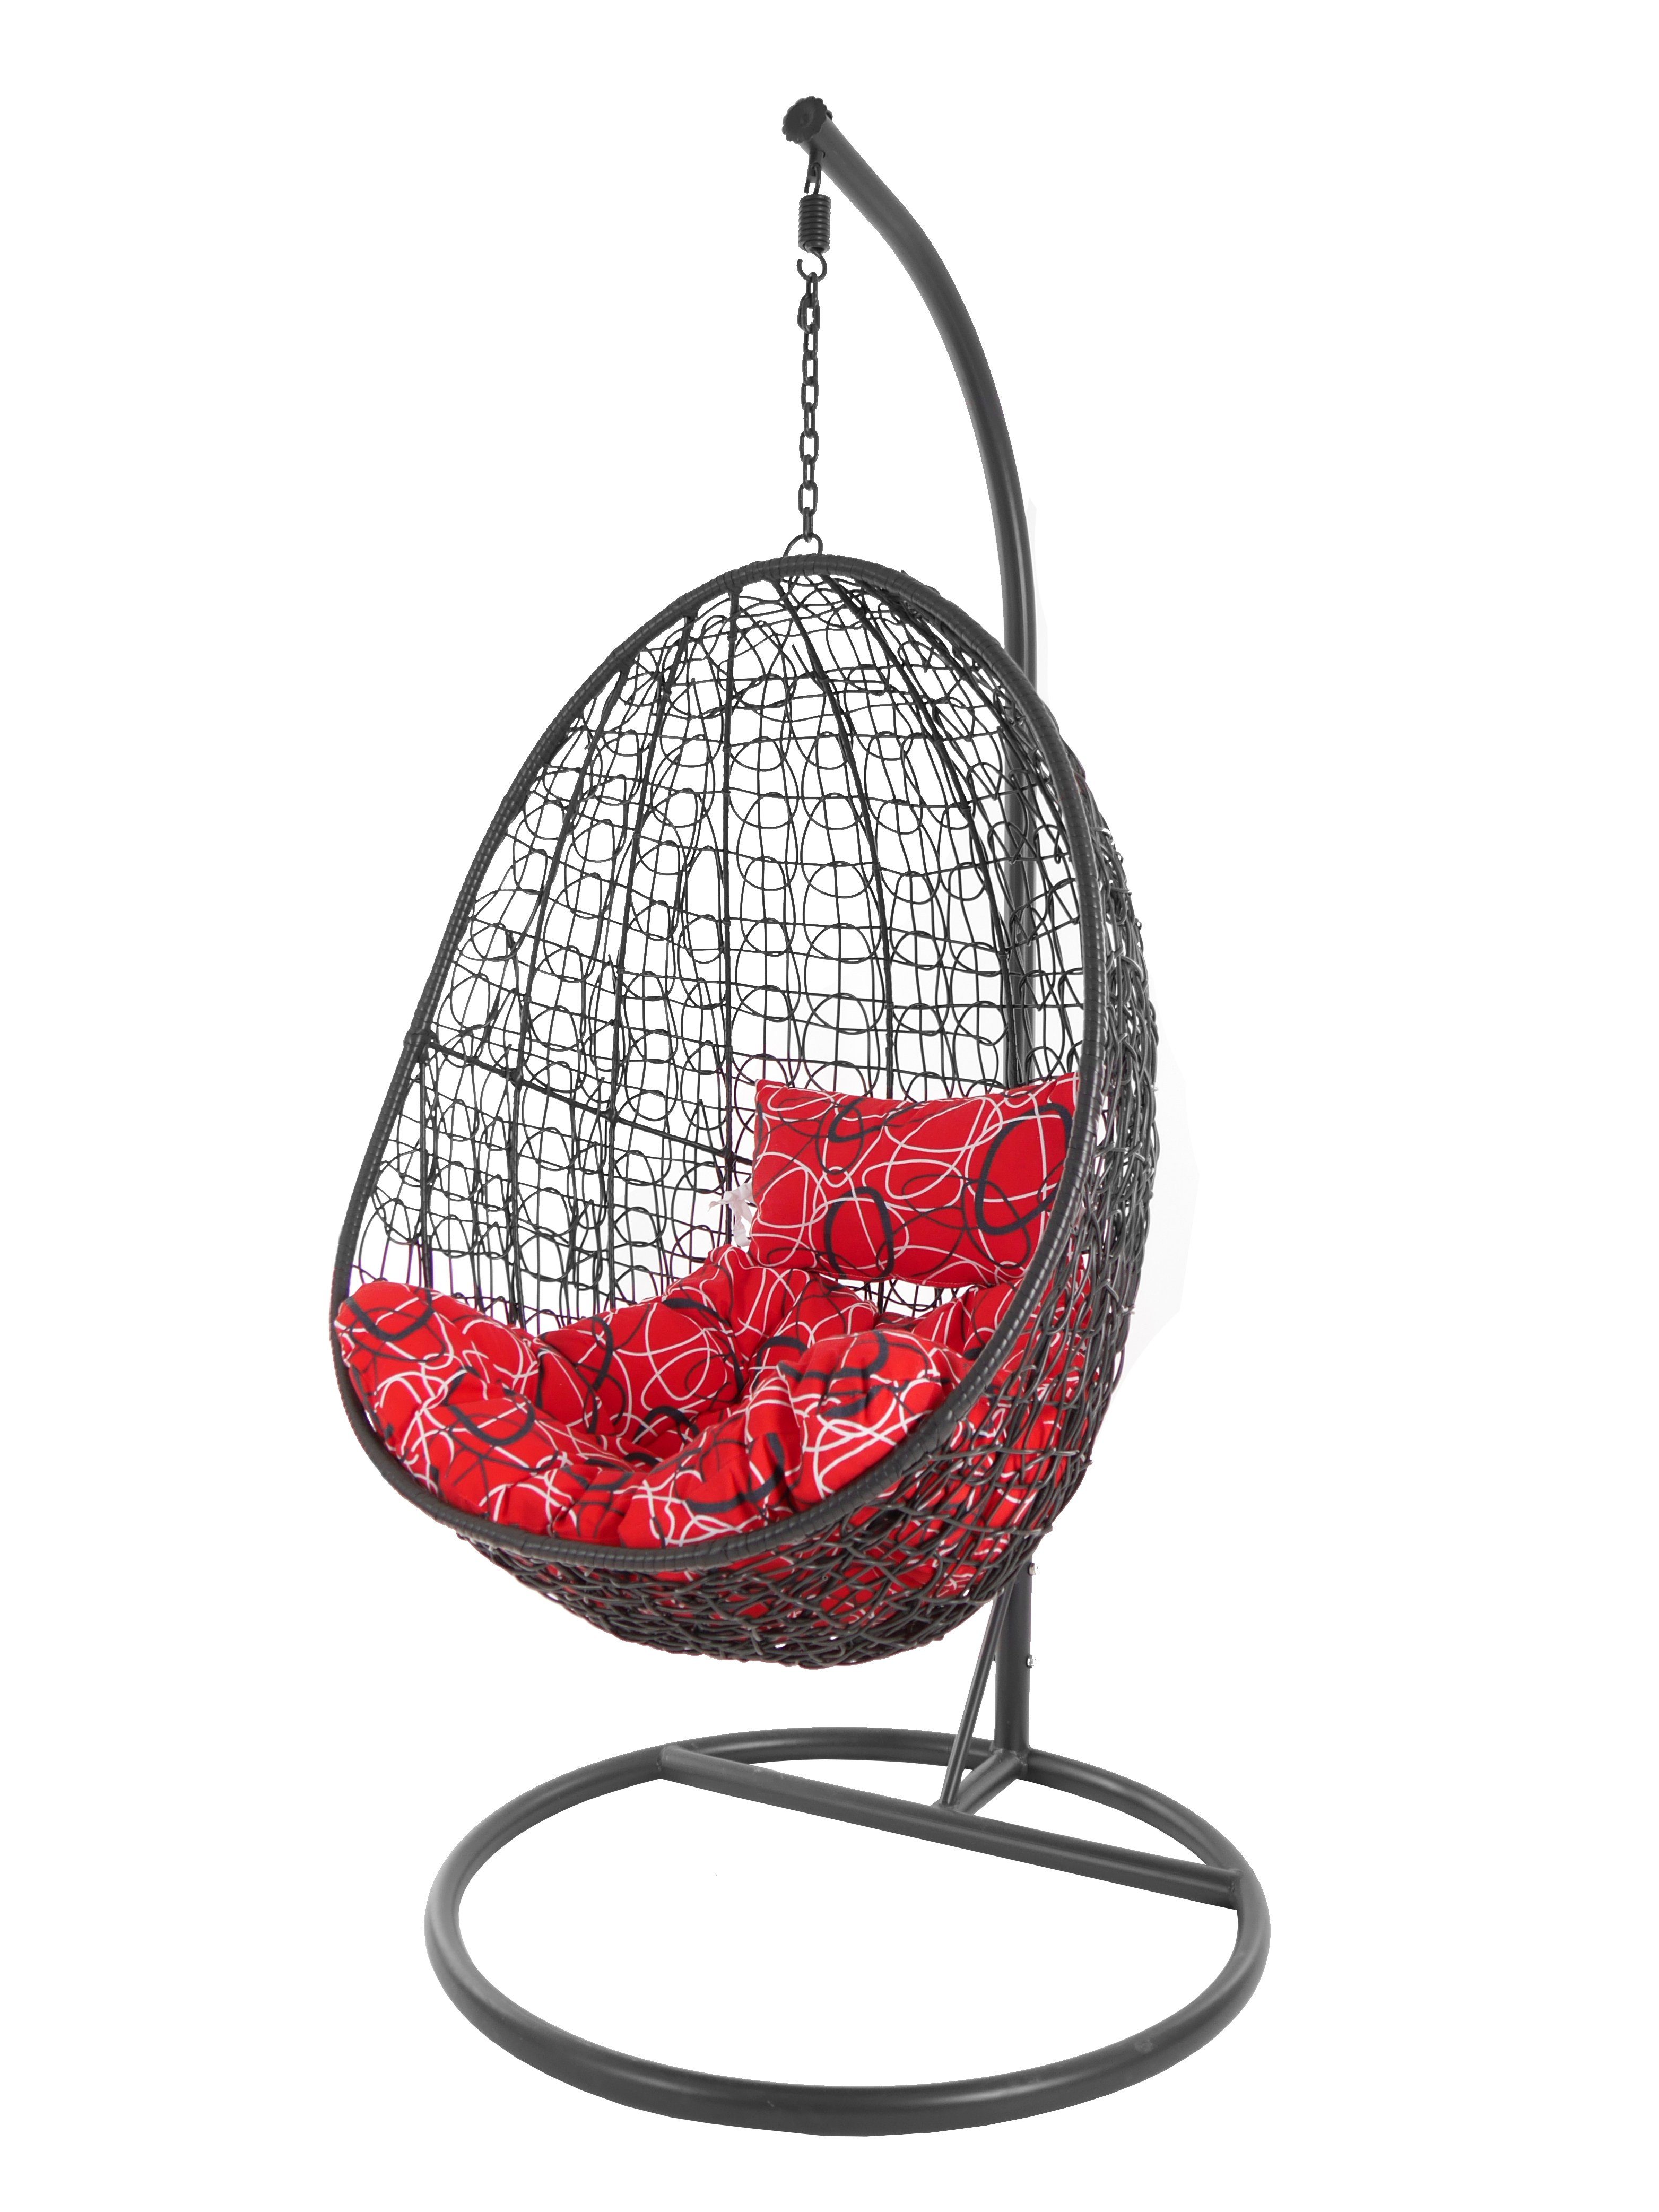 KIDEO Hängesessel Hängesessel Capdepera anthrazit, moderner Swing Chair, Schwebesessel mit Gestell und Kissen, Loungemöbel rot gemustert (3088 red frizzy)